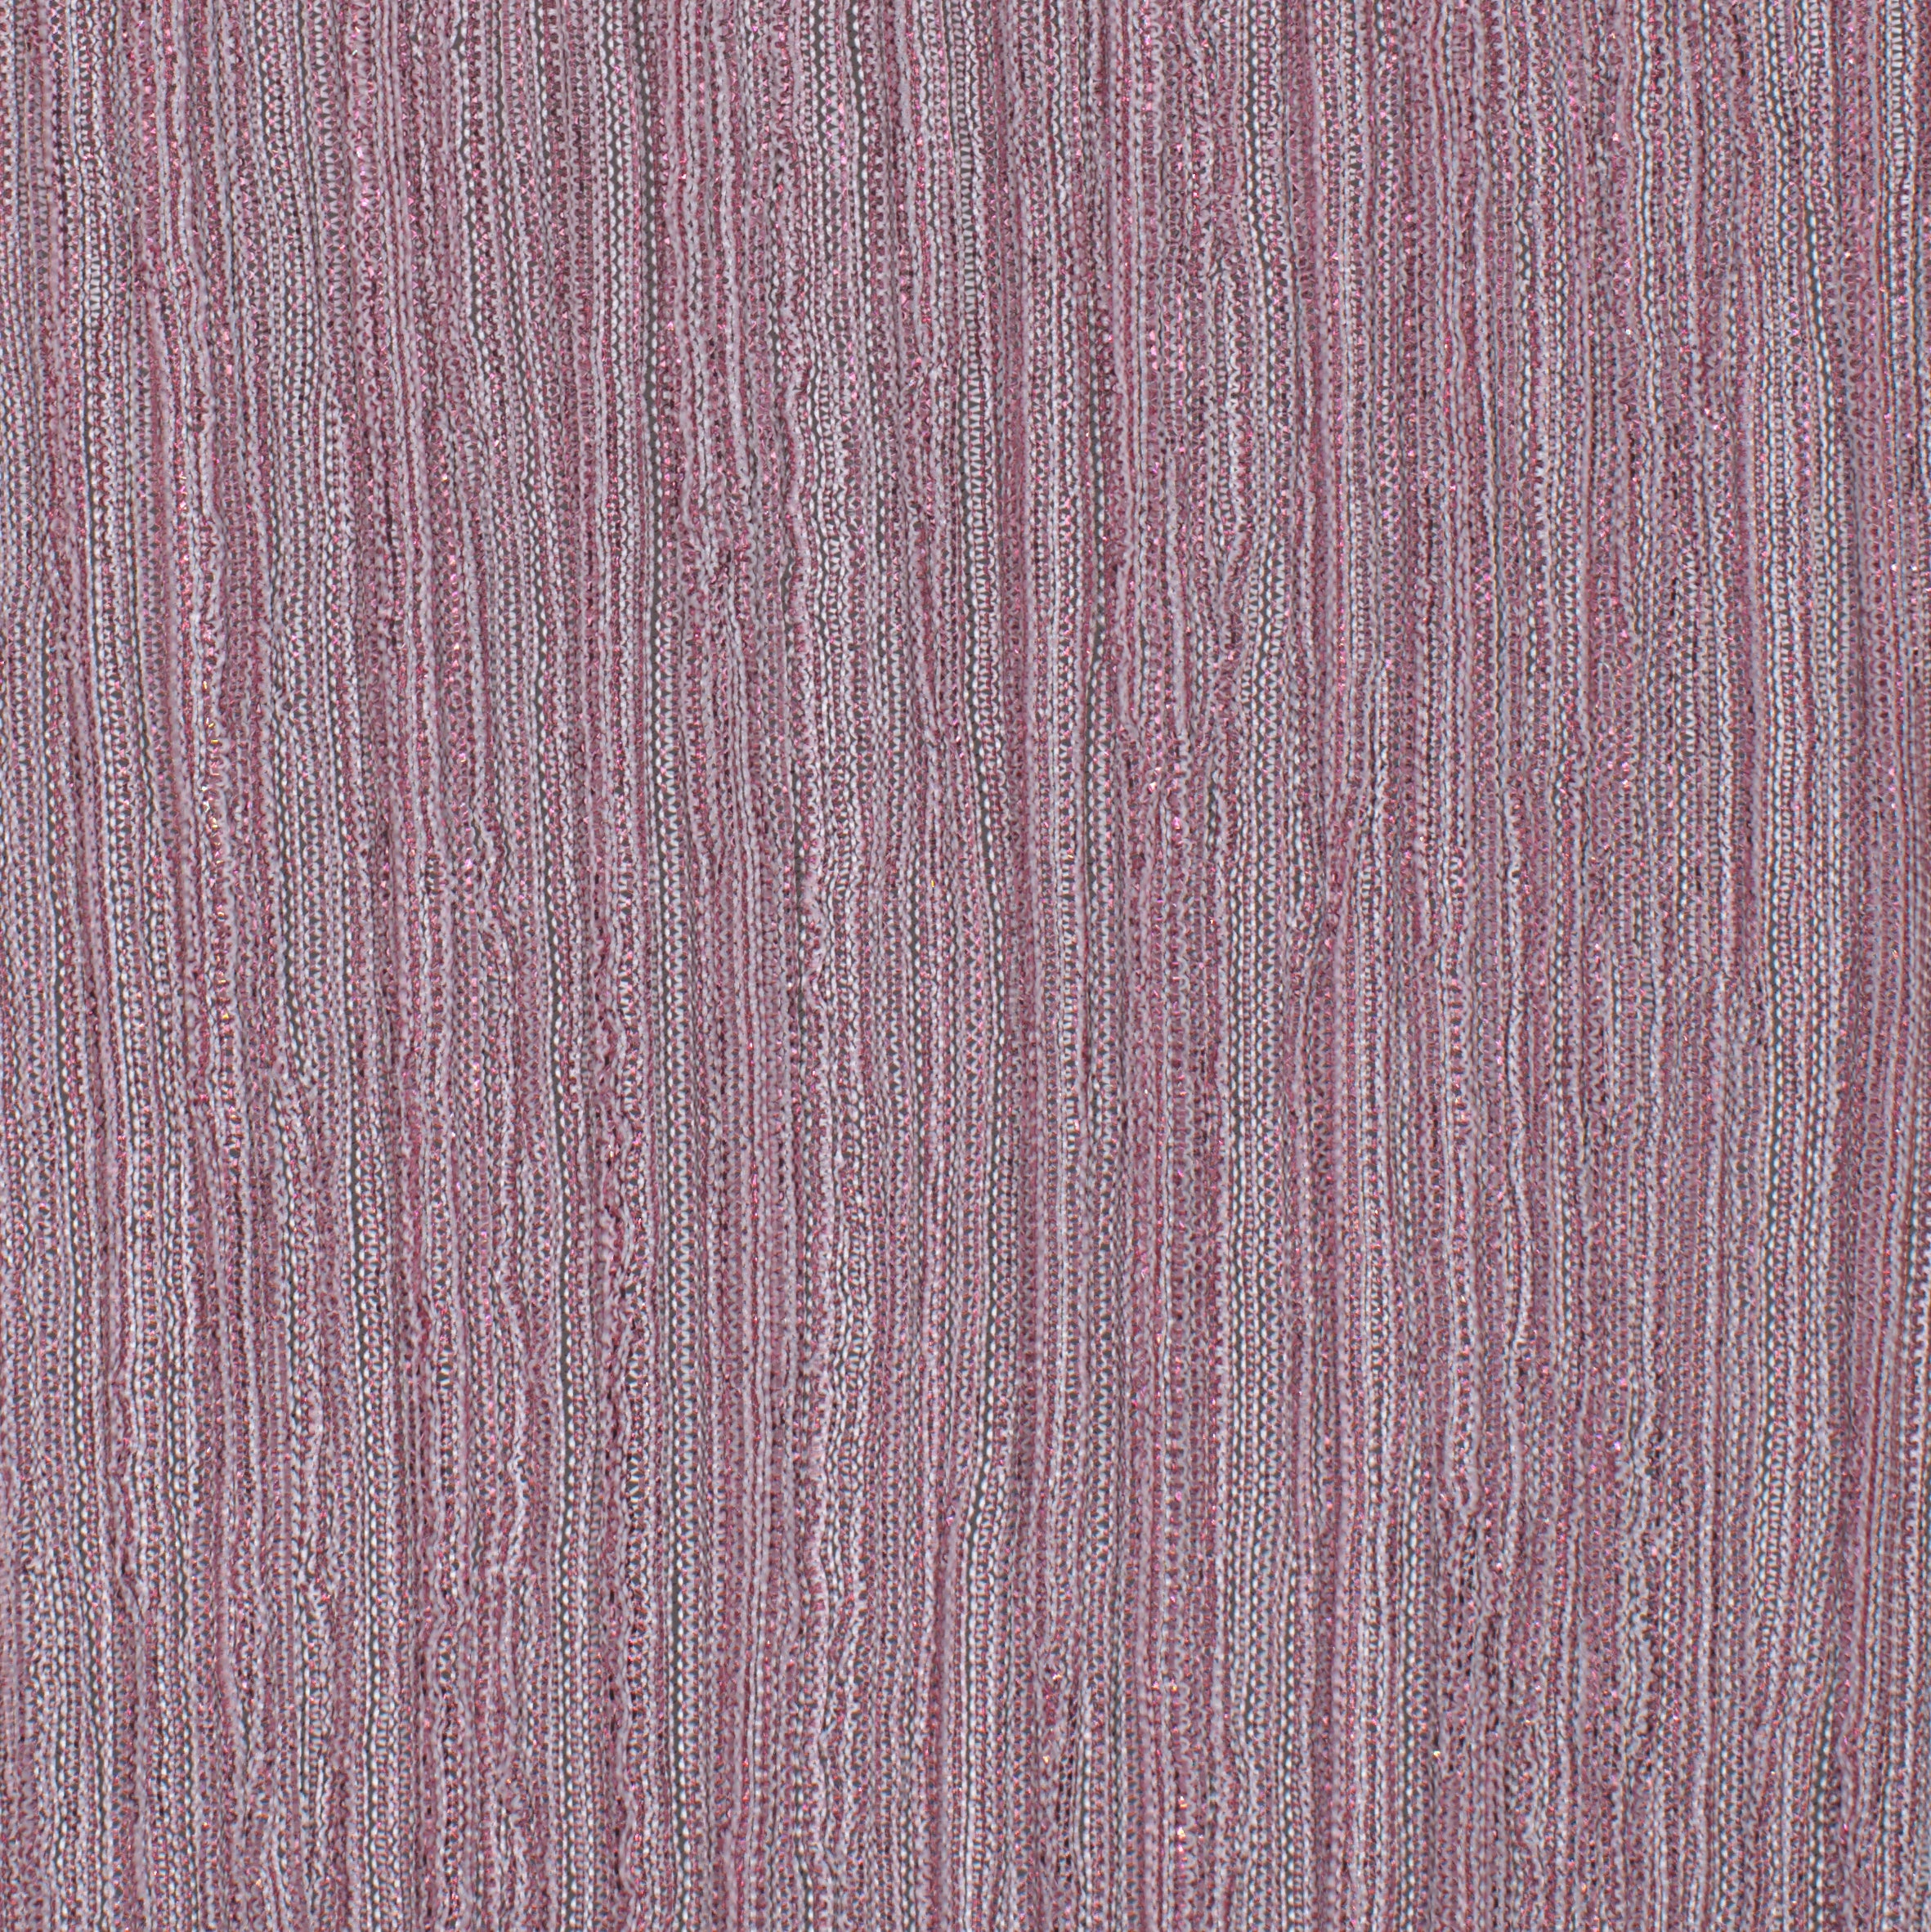 12006-16 Rose Pink Pink Metallic Pleat Plain Dyed Blend 126g/yd 56" blend knit metallic pink plain dyed pleat ppl new Metallic, Pleat - knit fabric - woven fabric - fabric company - fabric wholesale - fabric b2b - fabric factory - high quality fabric - hong kong fabric - fabric hk - acetate fabric - cotton fabric - linen fabric - metallic fabric - nylon fabric - polyester fabric - spandex fabric - chun wing hing - cwh hk - fabric worldwide ship - 針織布 - 梳織布 - 布料公司- 布料批發 - 香港布料 - 秦榮興